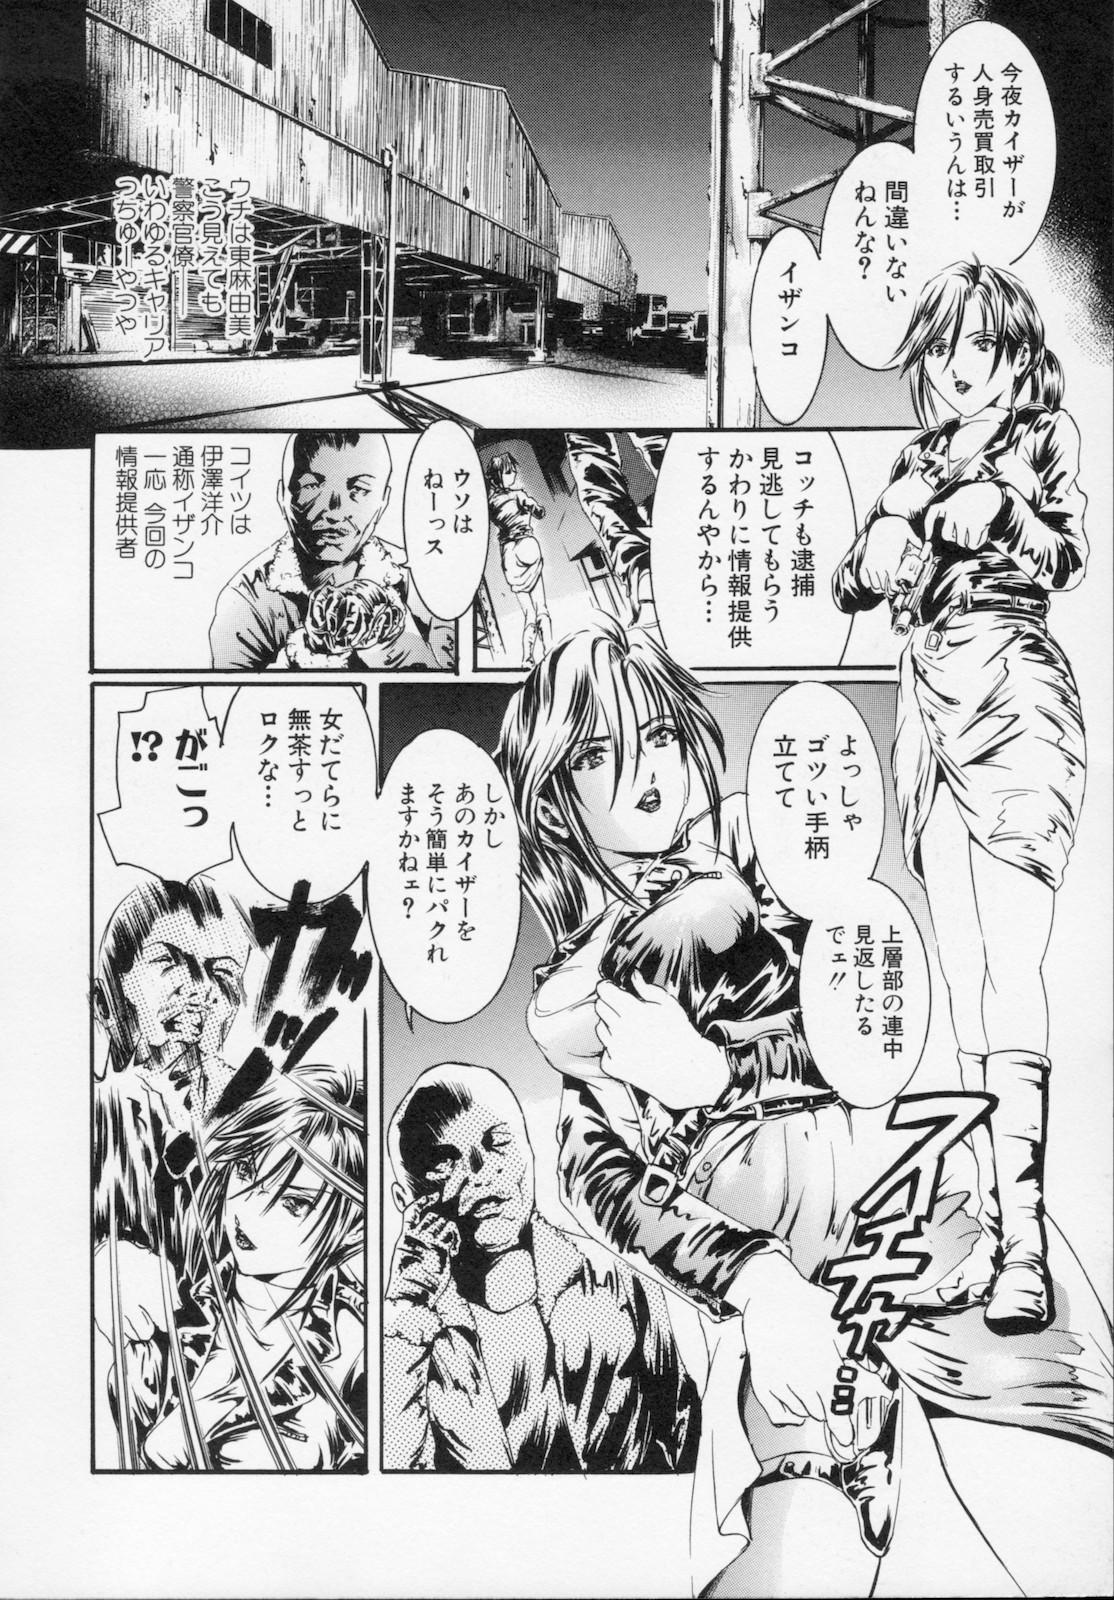 Watashi wa ryoujyoku daisuki na henatai mangaka desu 151